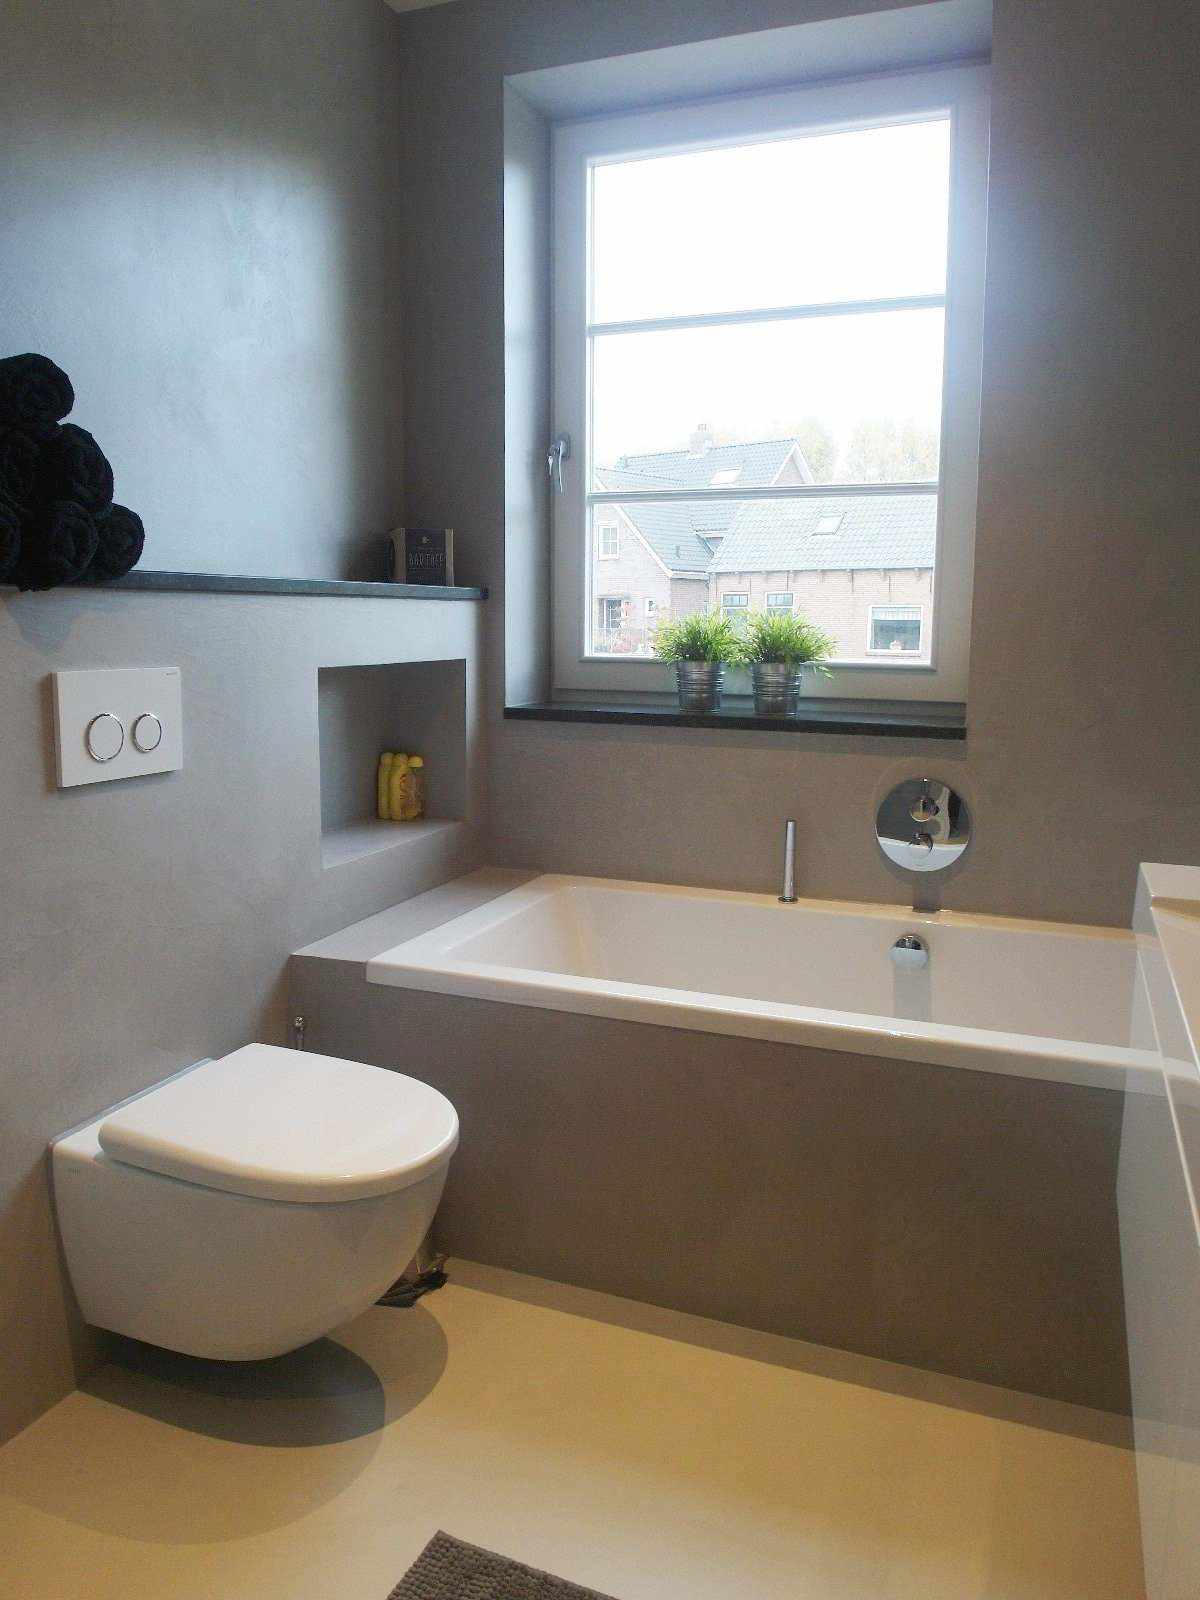 Microcemento grigio sulla parete e il mobile di un bagno in Olanda nel progetto Decas.